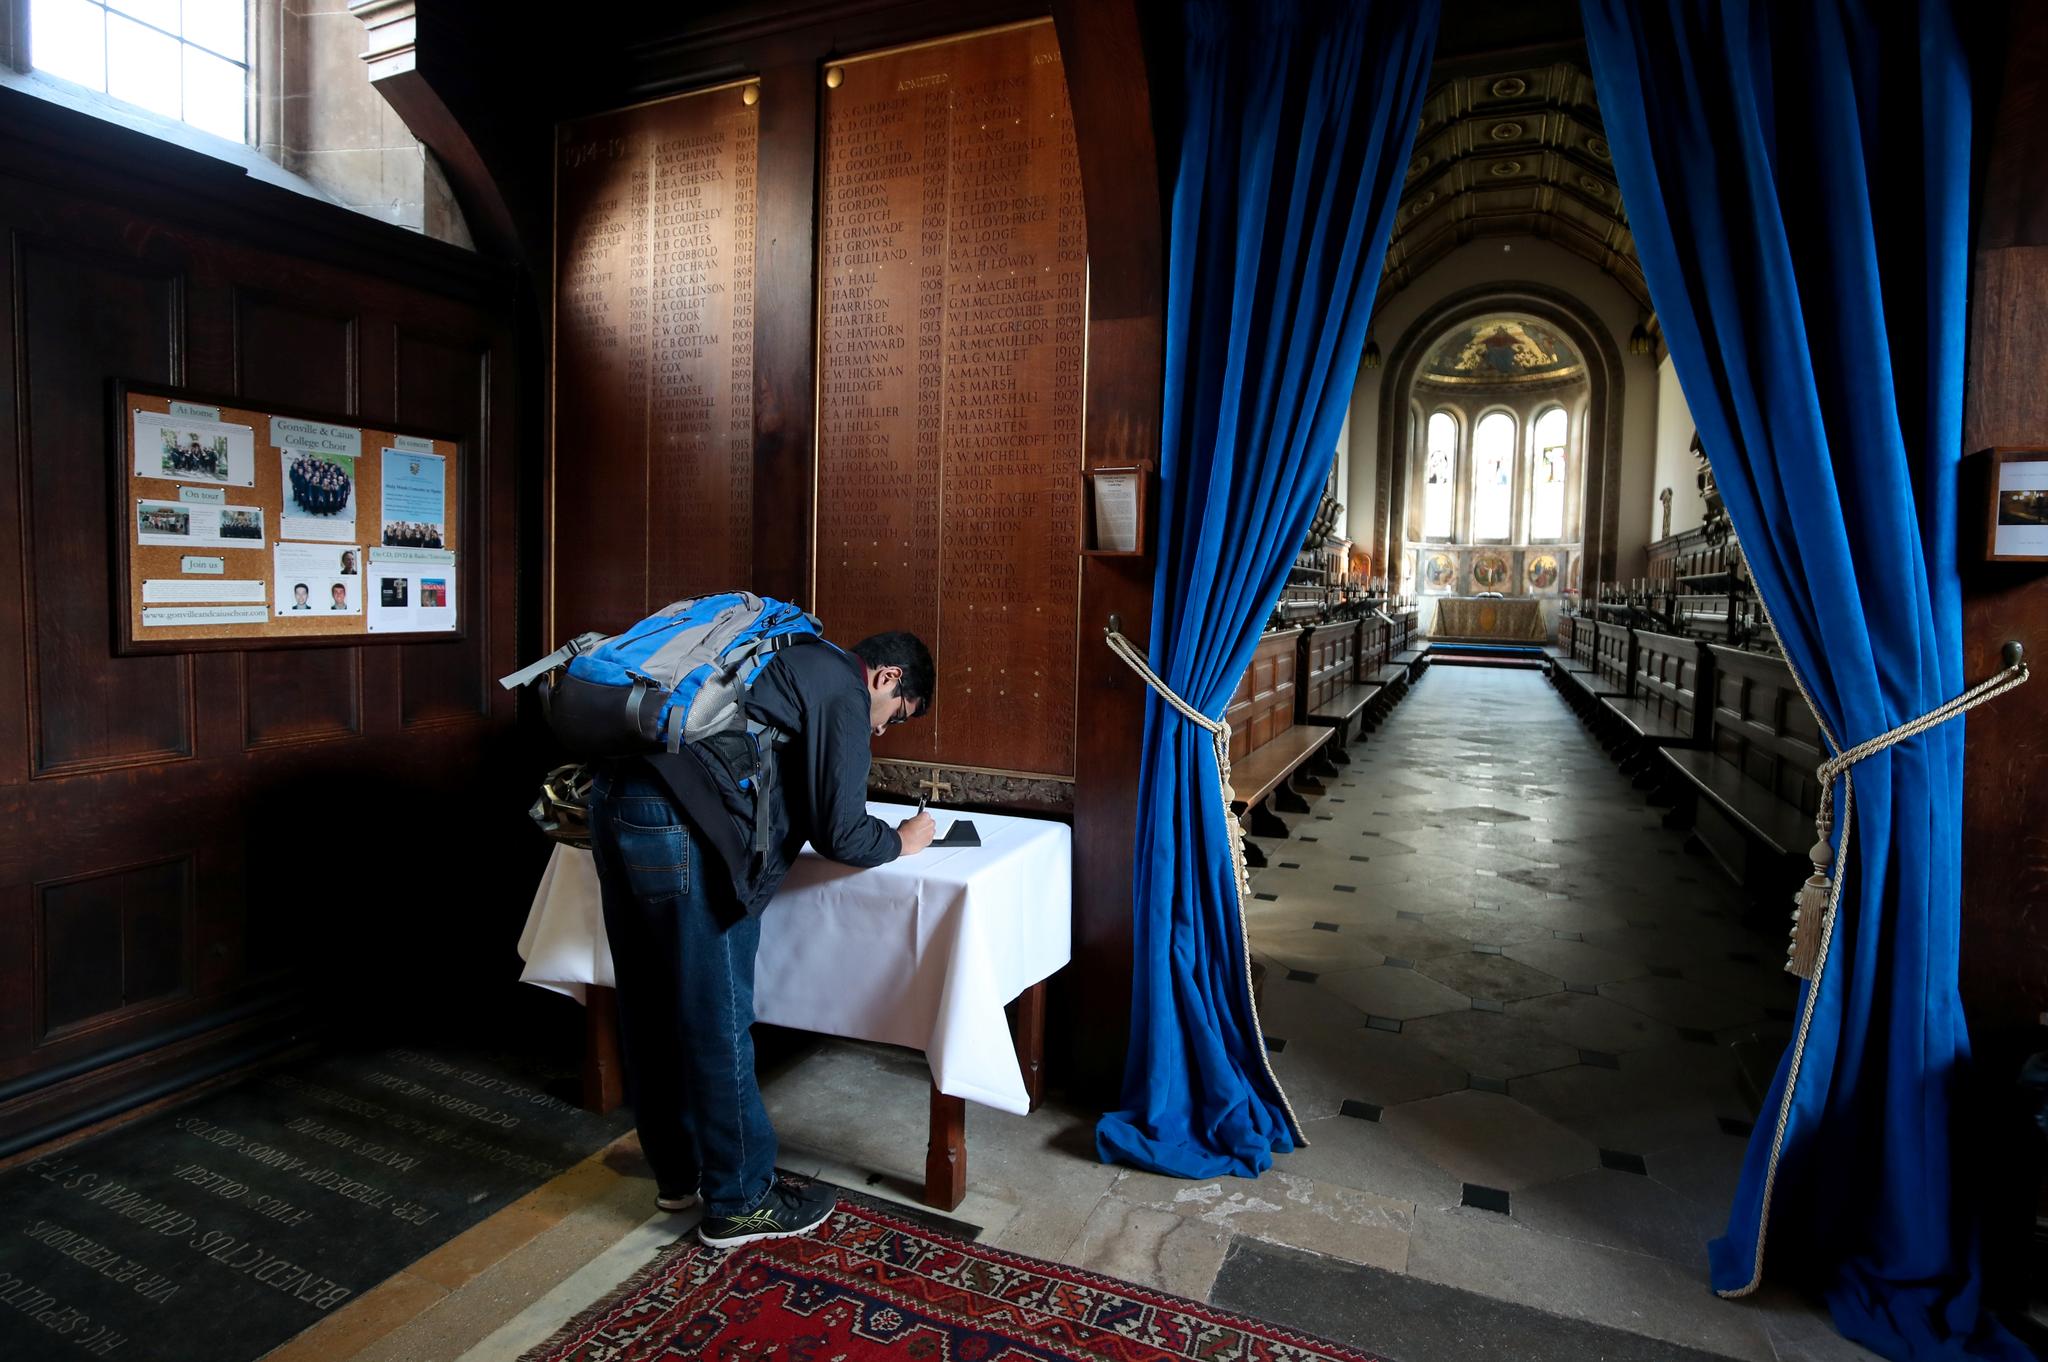 En kondolansebok ble lagt tilgjengelig for publikum i kapellet ved University of Cambridge etter at nyheten om Stephen Hawkings død gikk verden over 14. mars. 